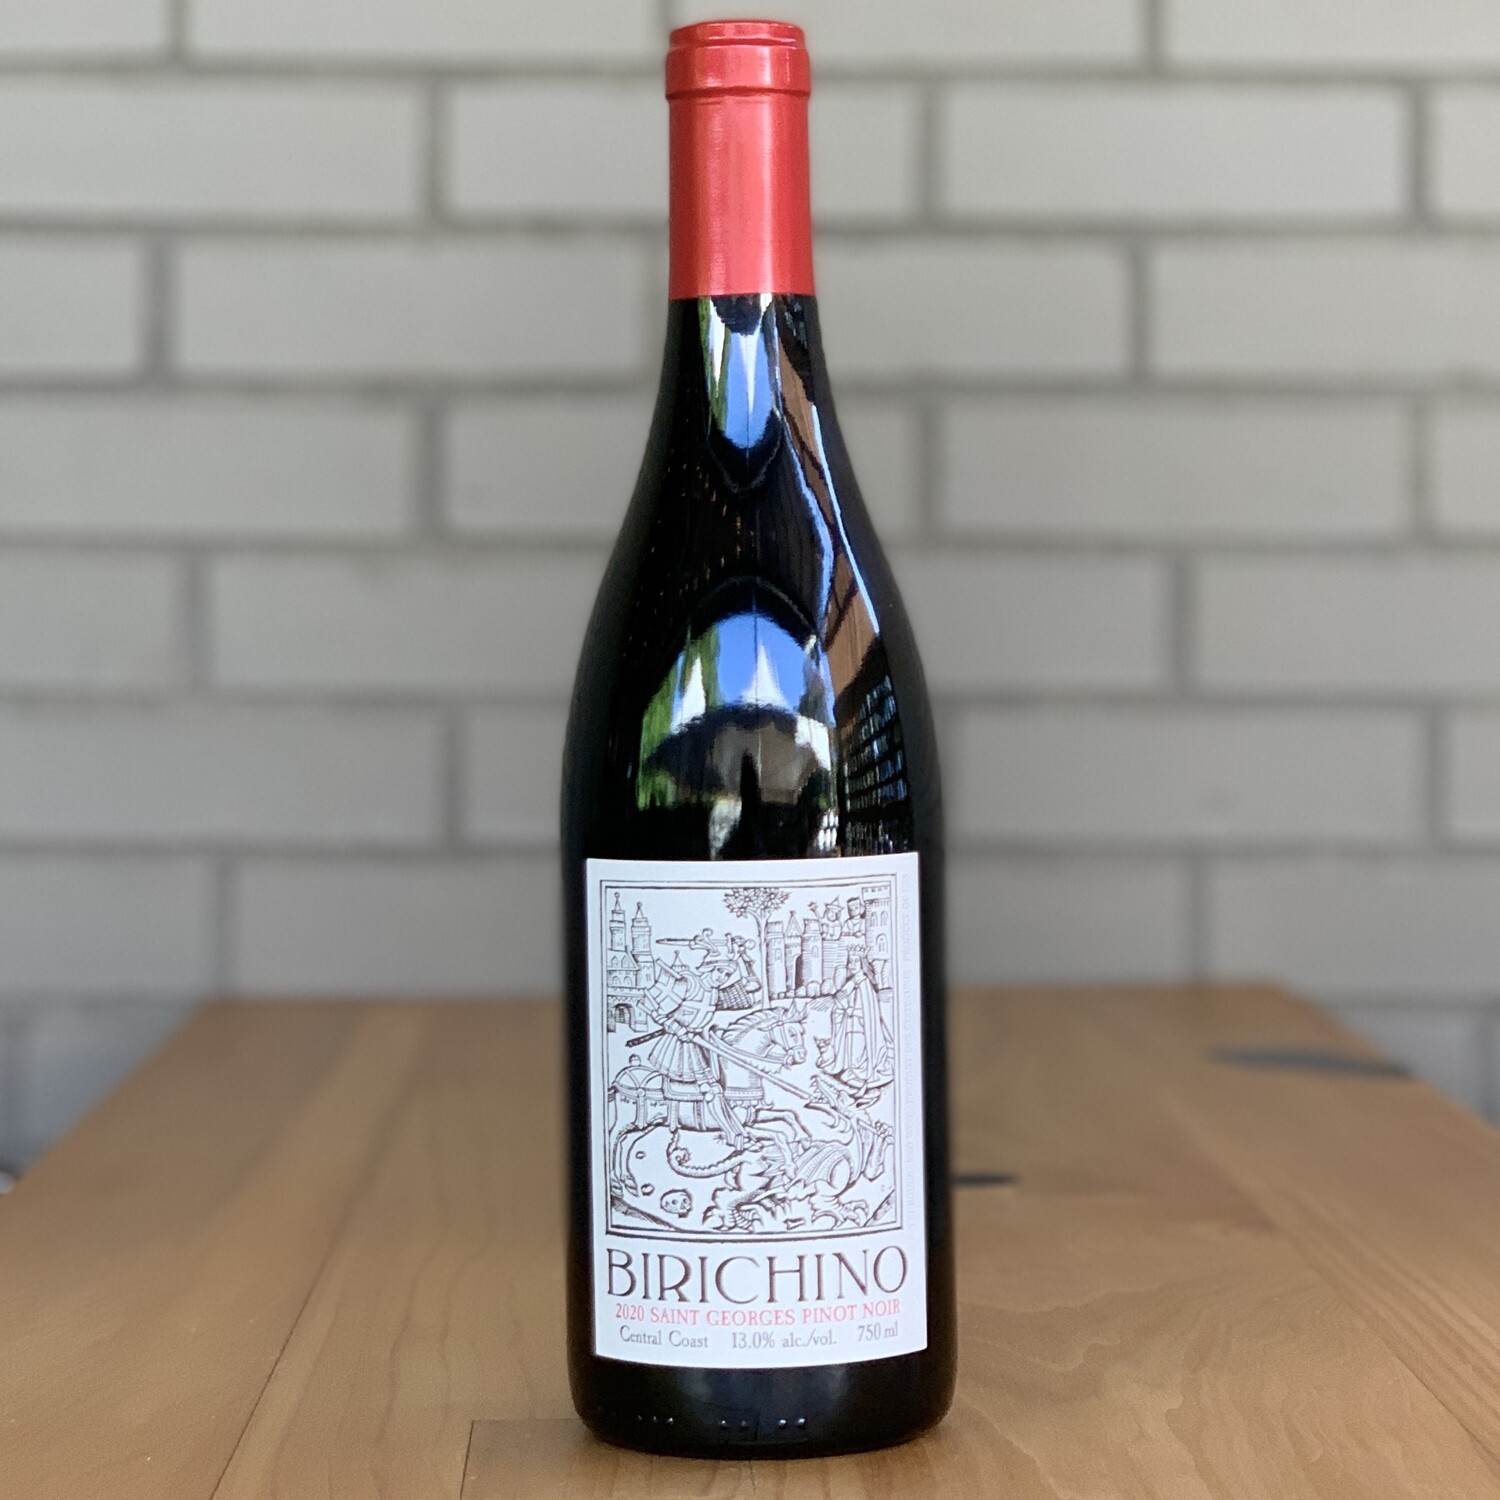 Birichino 'Saint Georges' Pinot Noir (750ml)